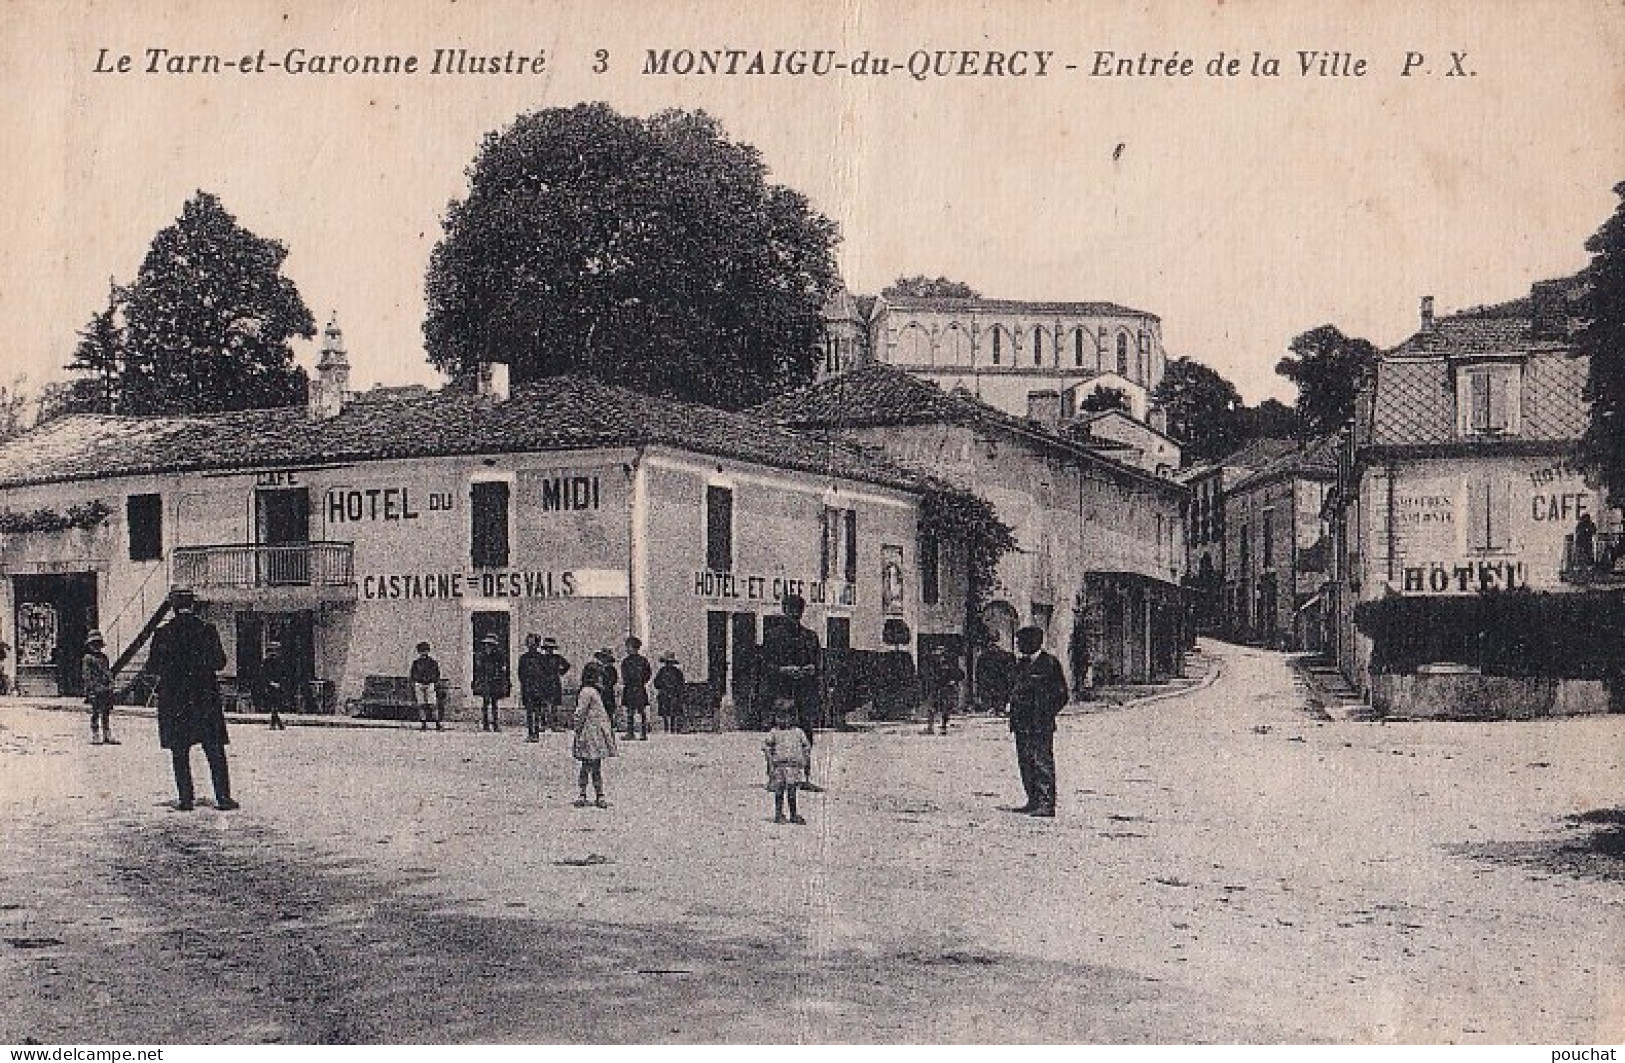 82) MONTAIGU DU QUERCY -  ENTREE DE LA VILLE  - ANIMEE - CAFE - HOTEL DU MIDI - CASTAGNE - DESVALS - HABITANTS - 2 SCANS - Montaigu De Quercy